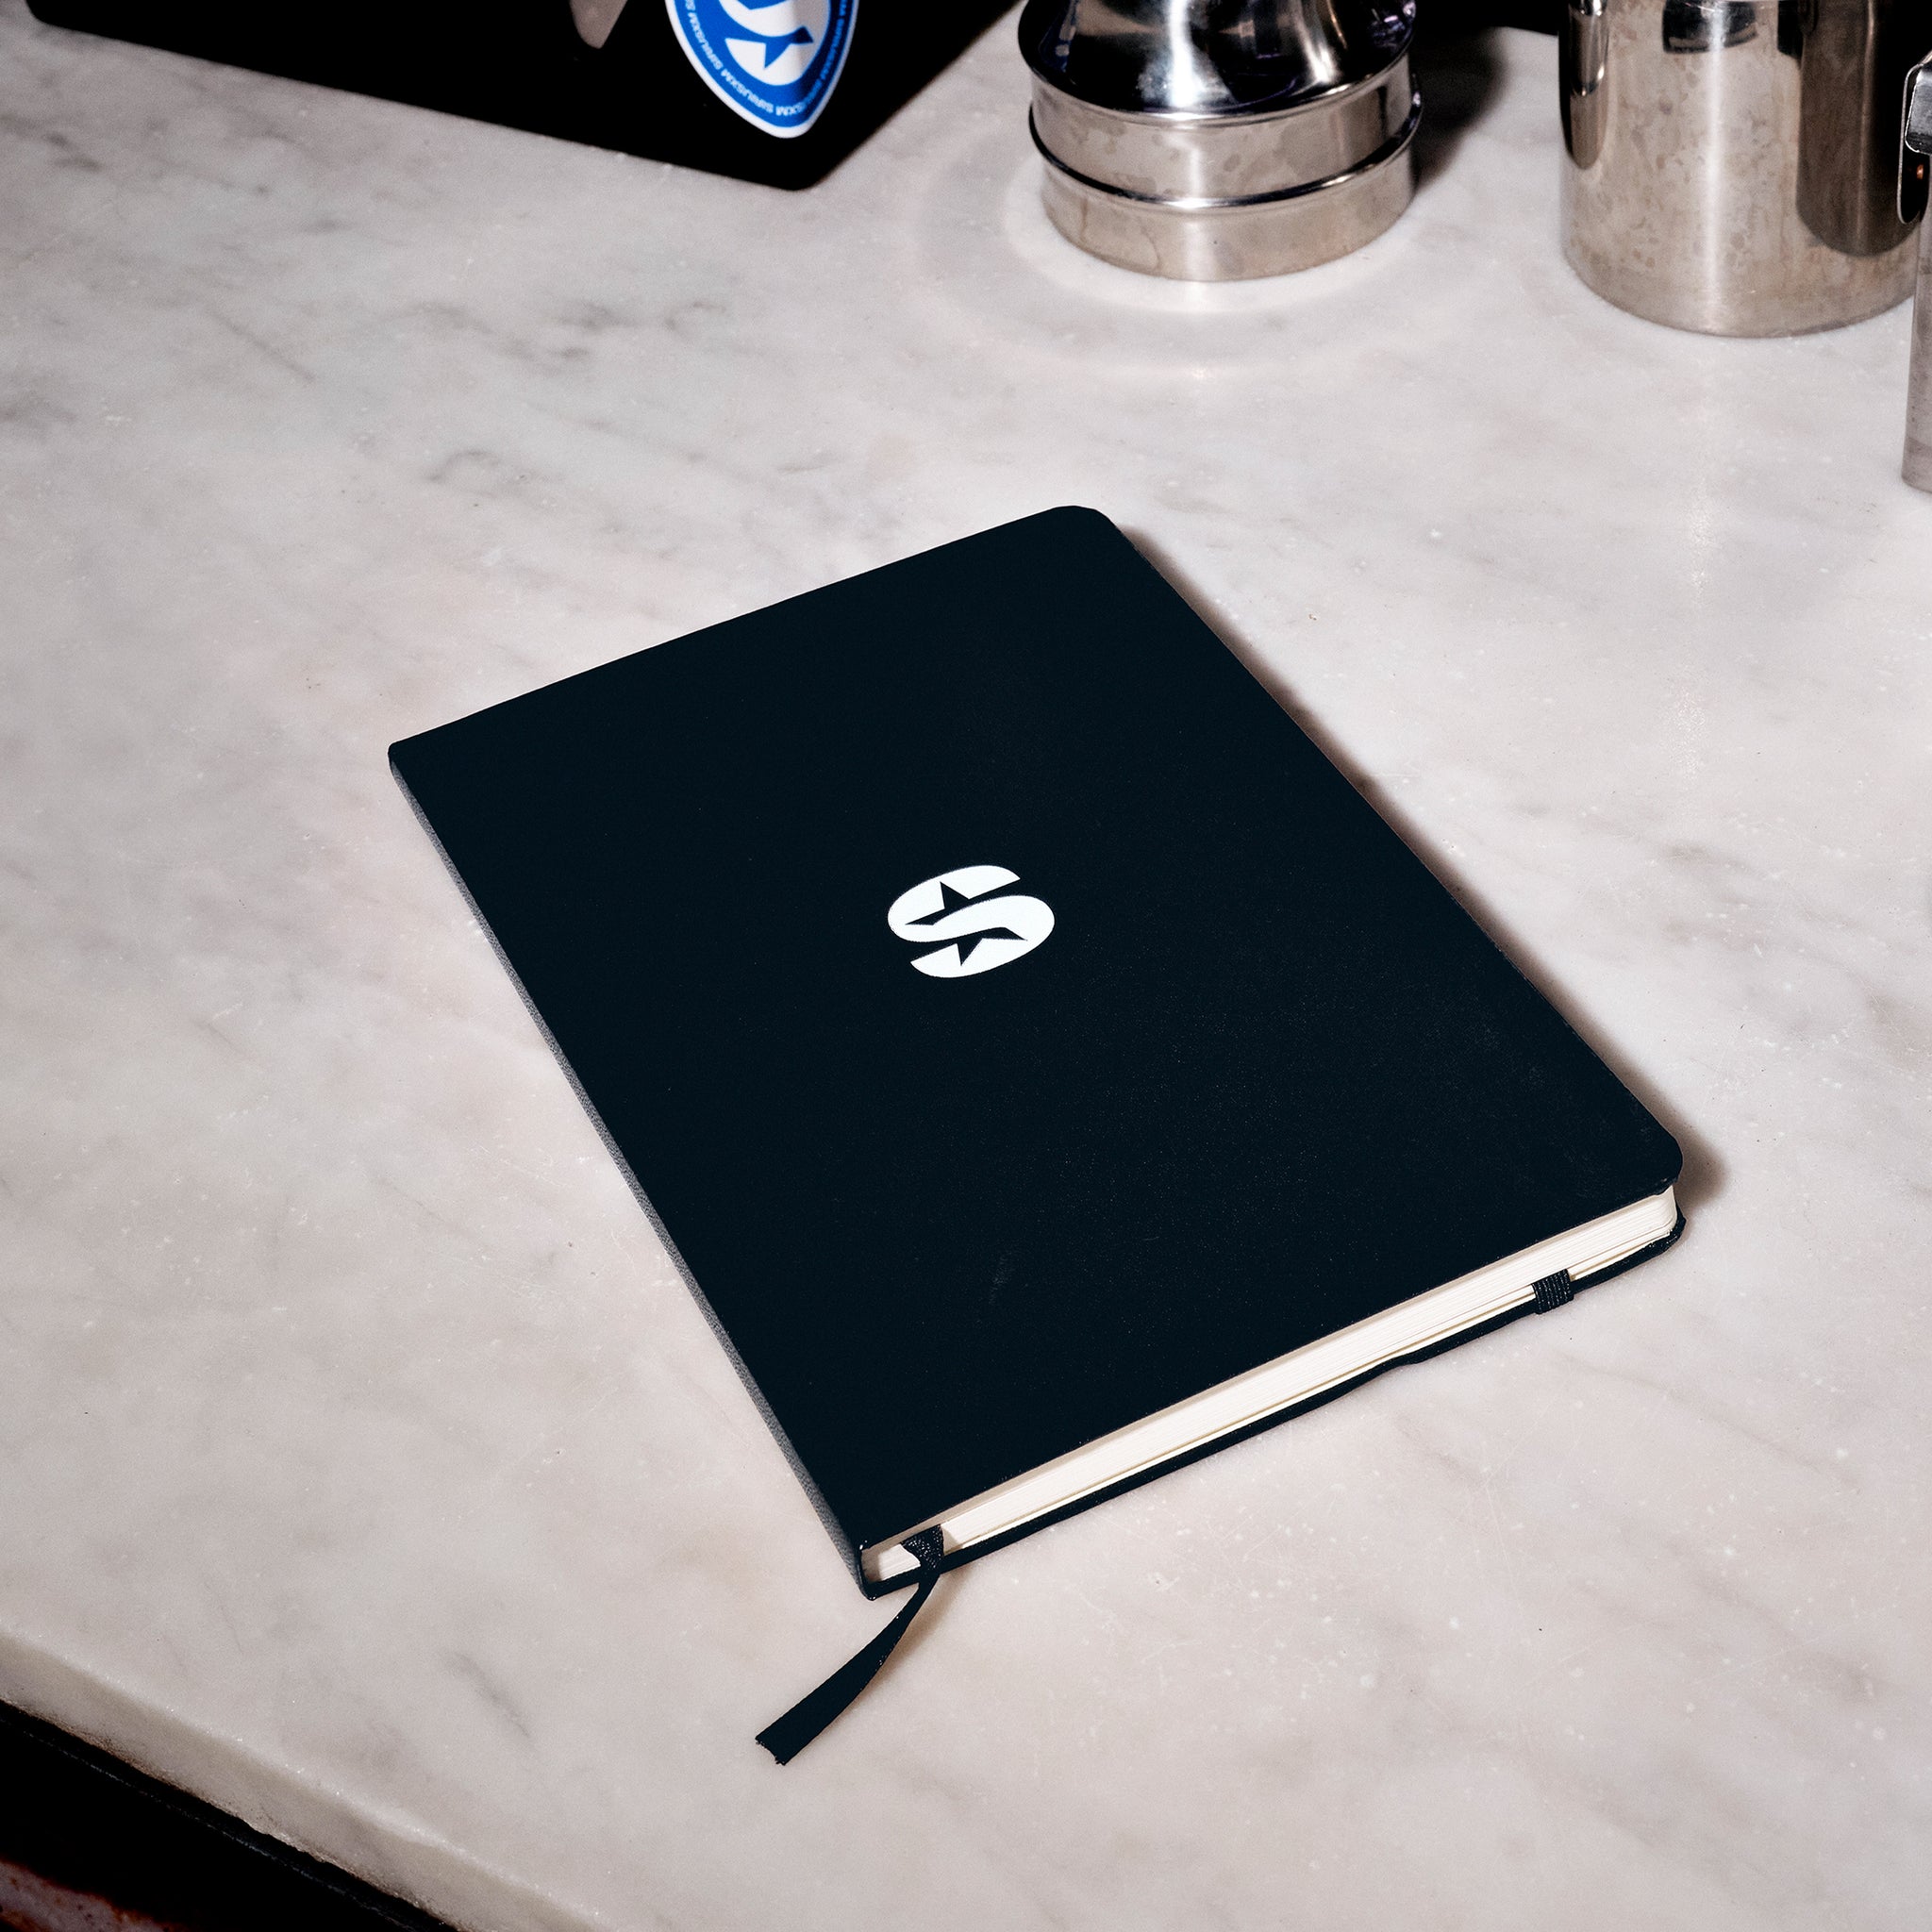 SiriusXM: Next Gen Hardcover Notebook